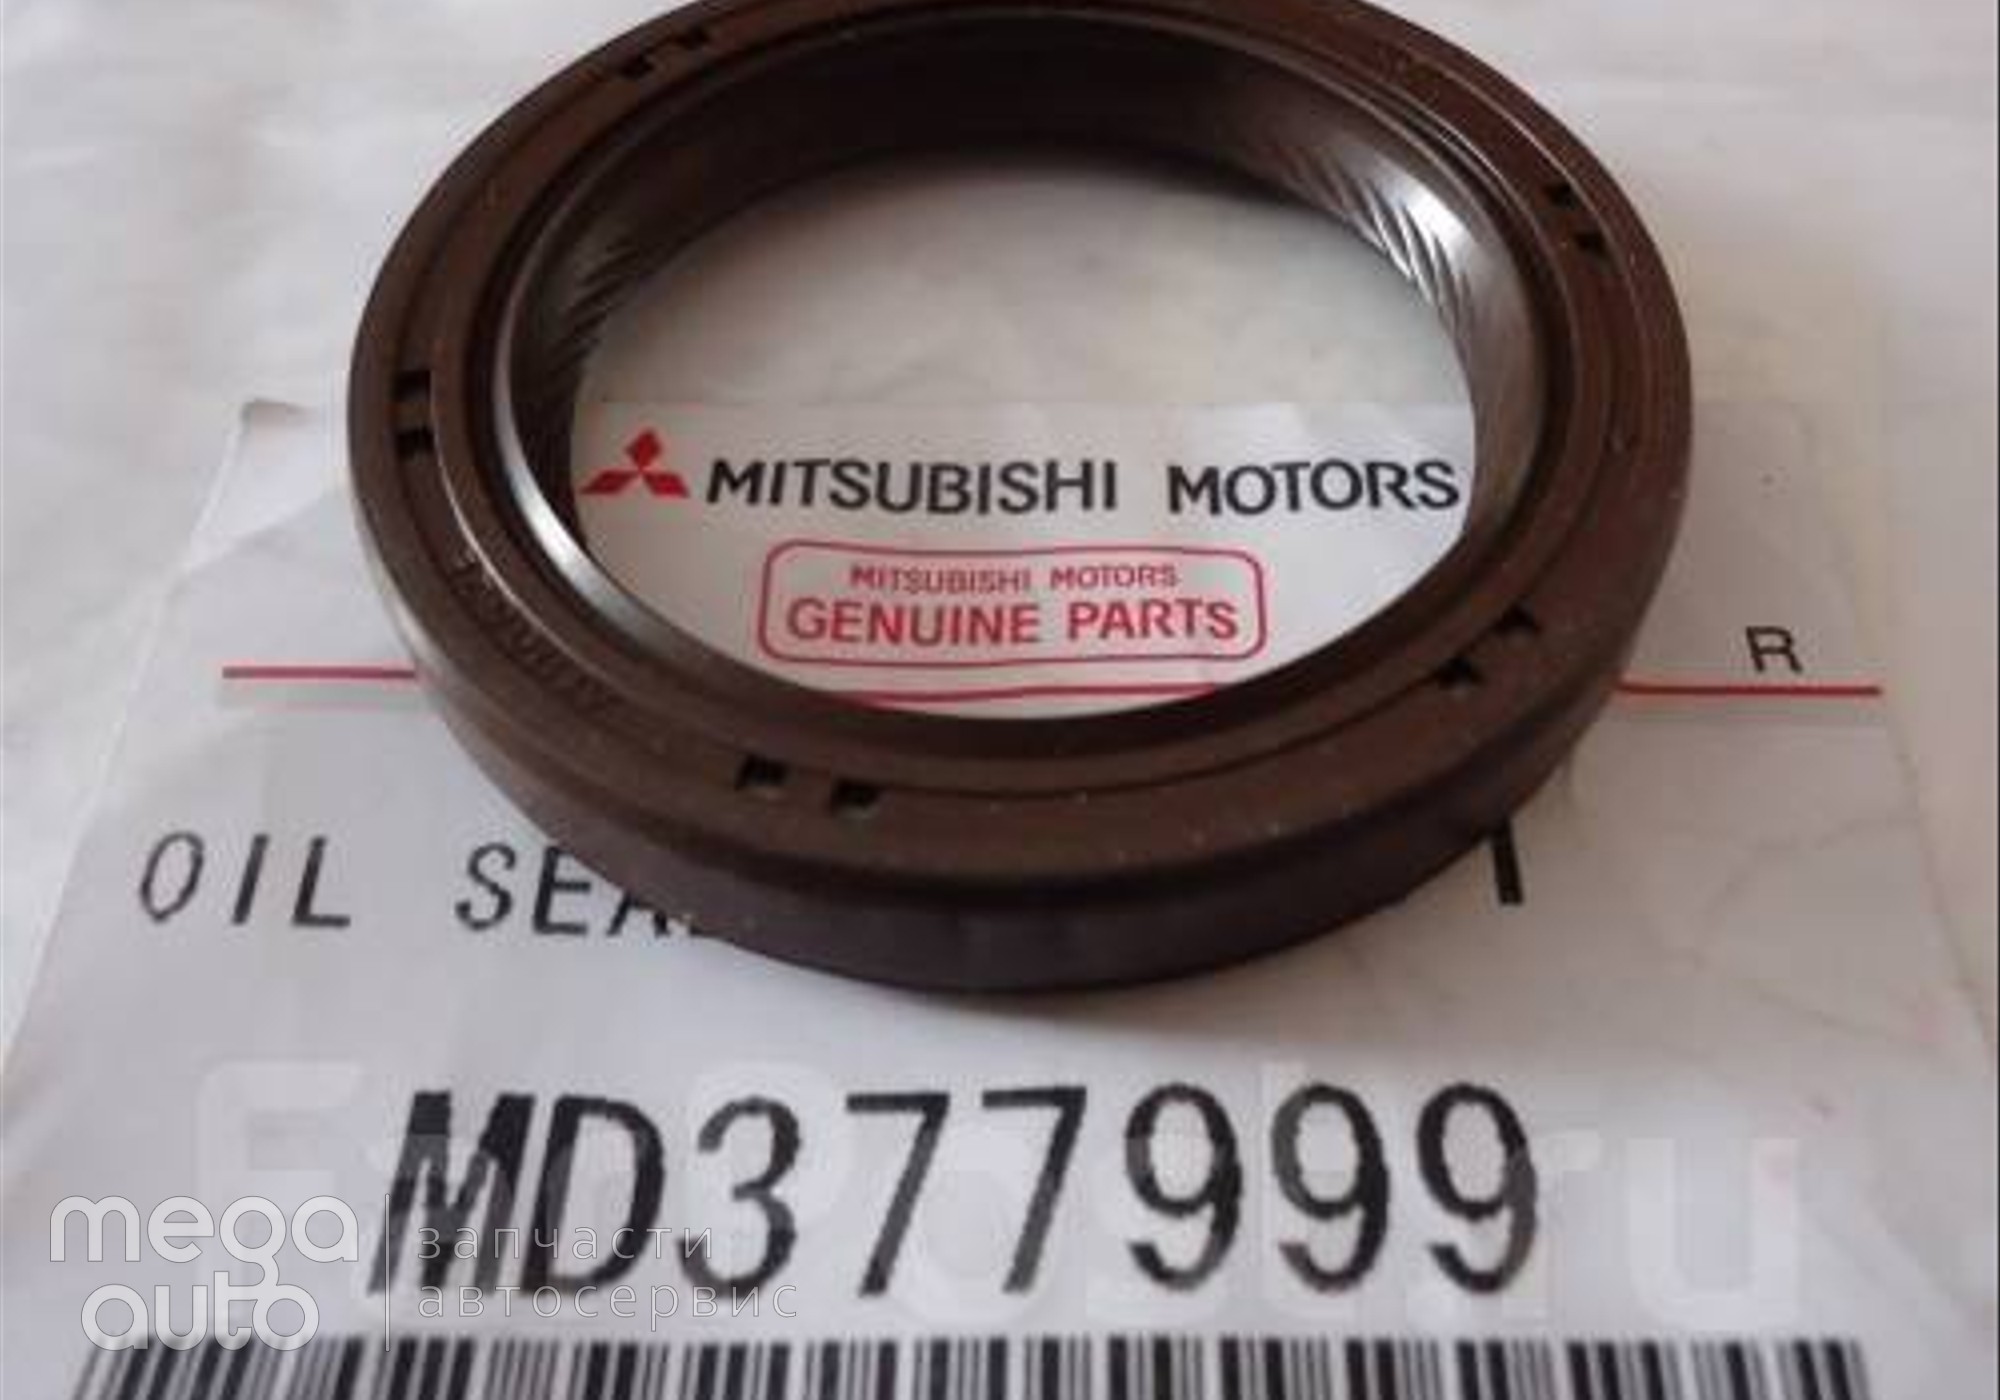 MD377999 Сальник коленвала митсубиси для Mitsubishi Colt VI (с 2002 по 2012)